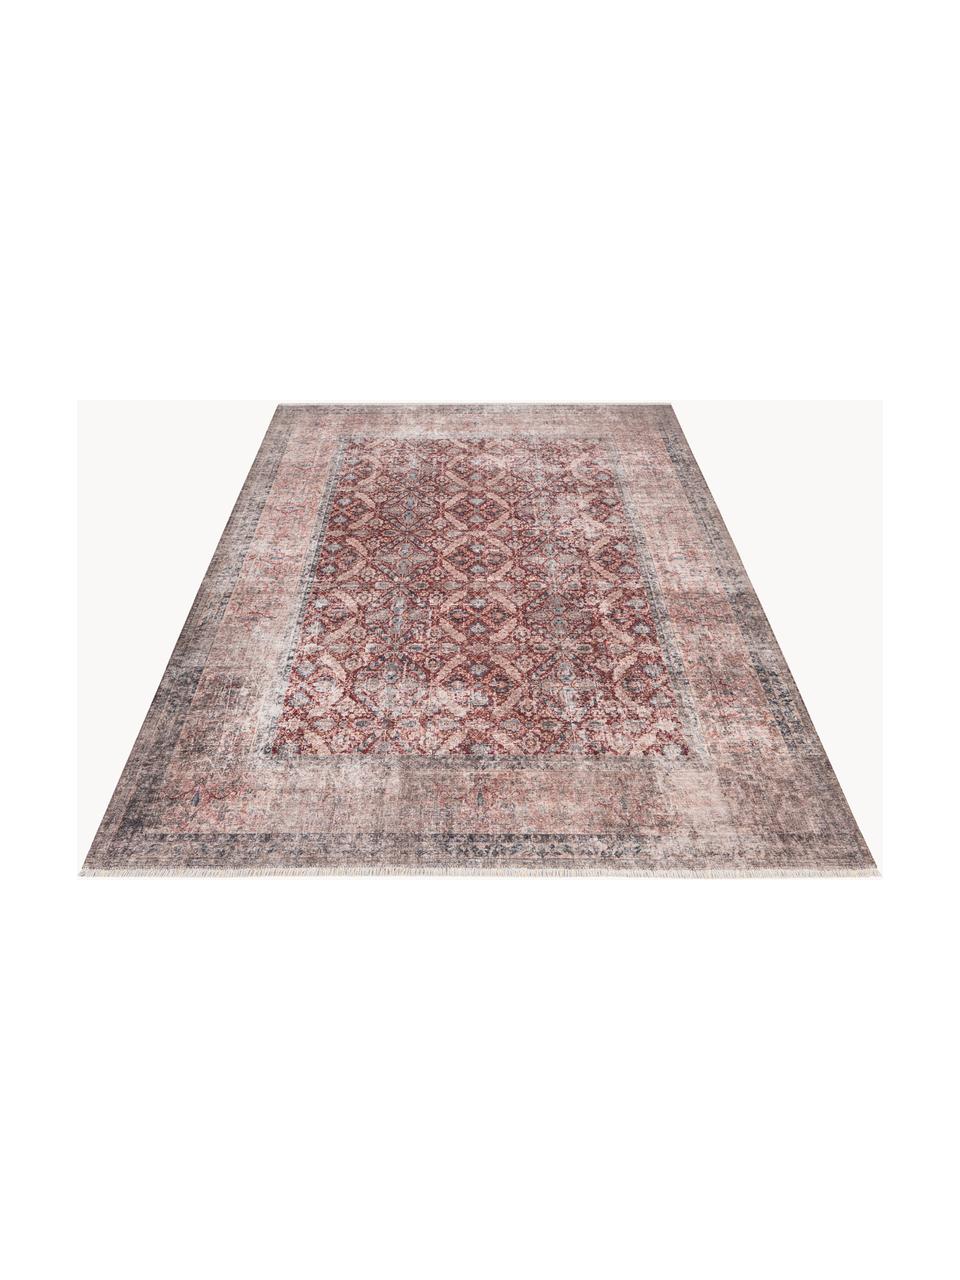 Interiérový a exterirérový koberec s ornamentálním vzorem Muster, 70 % bavlna, 30 % polyester, Terakotová, Š 80 cm, D 150 cm (velikost XS)